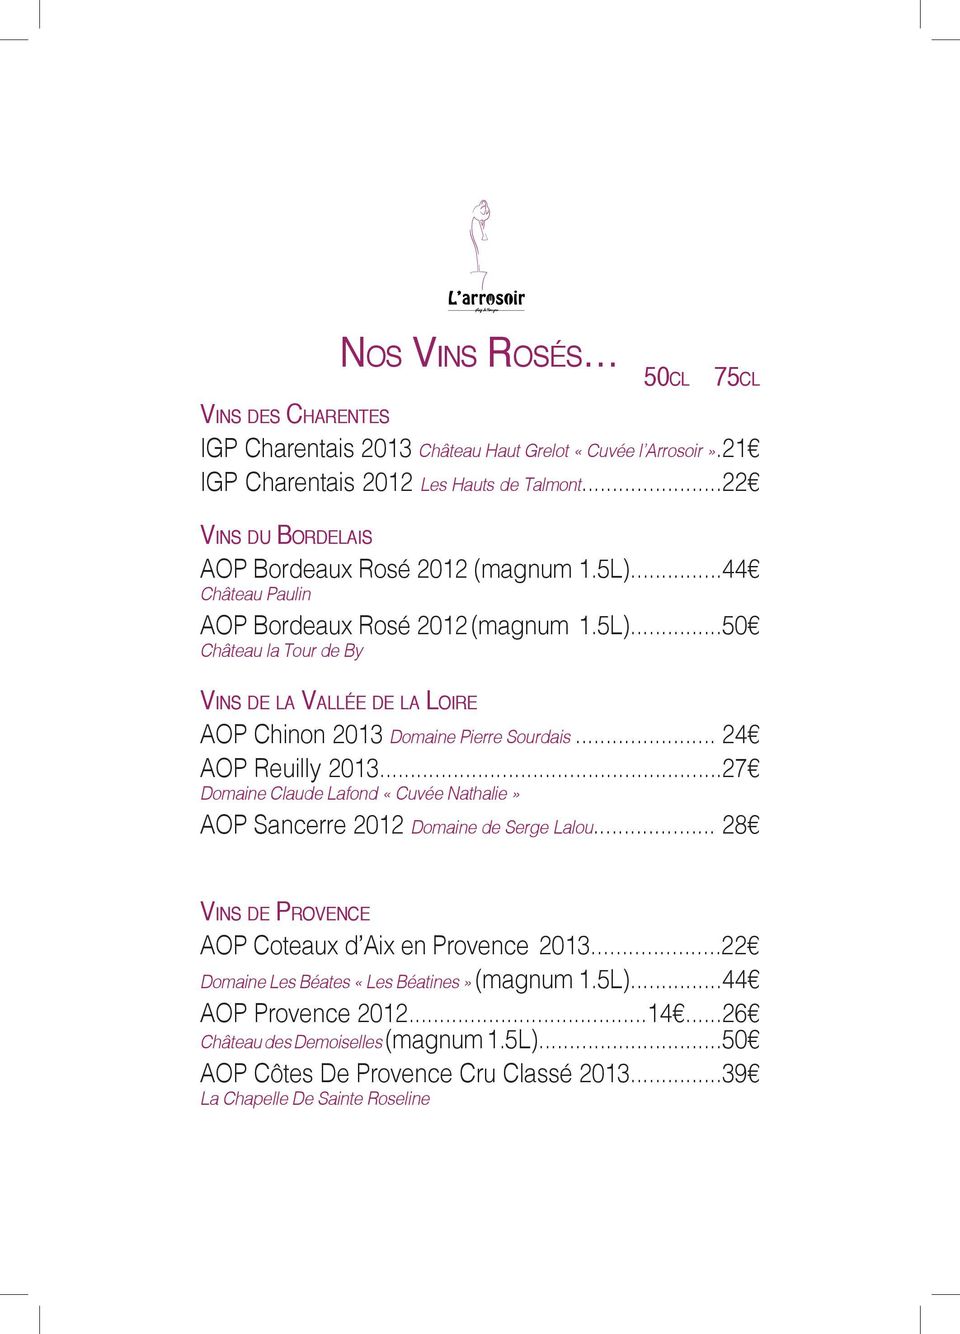 .. 24 AOP Reuilly 2013...27 Domaine Claude Lafond «Cuvée Nathalie» AOP Sancerre 2012 Domaine de Serge Lalou... 28 Vins de Provence AOP Coteaux d Aix en Provence 2013.